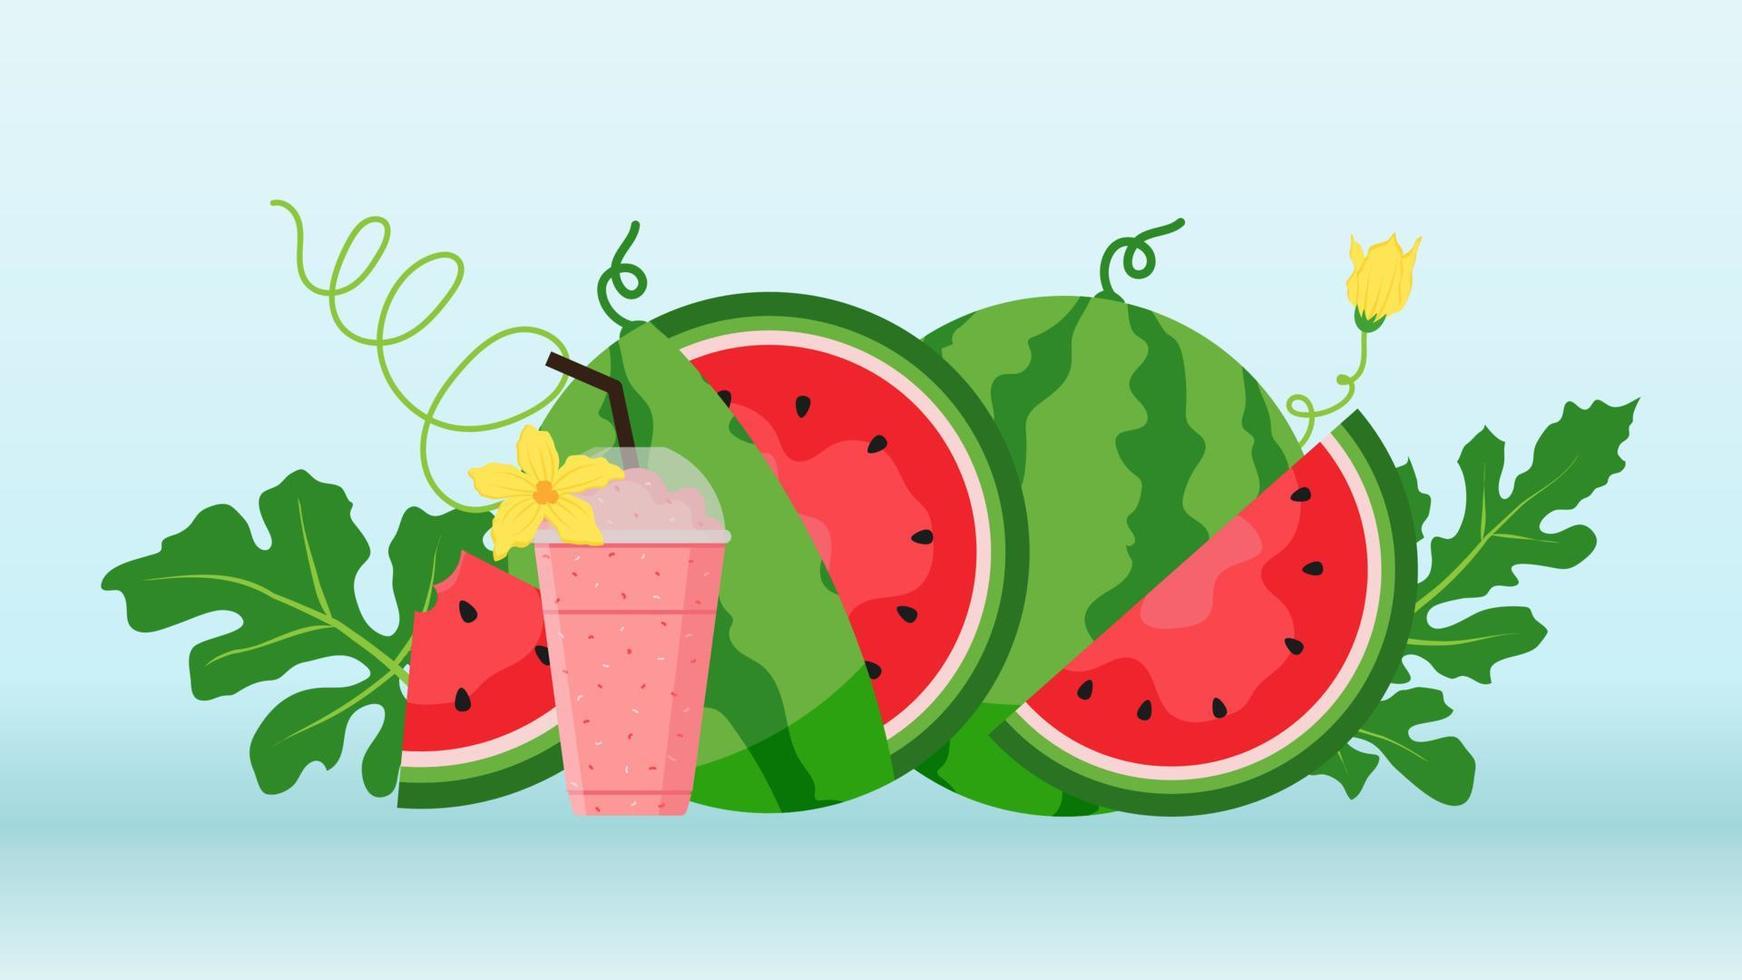 banner de sandía y rebanadas jugosas, diseño plano de hojas verdes e ilustración de flor de sandía, concepto de fruta fresca y jugosa de comida de verano. vector